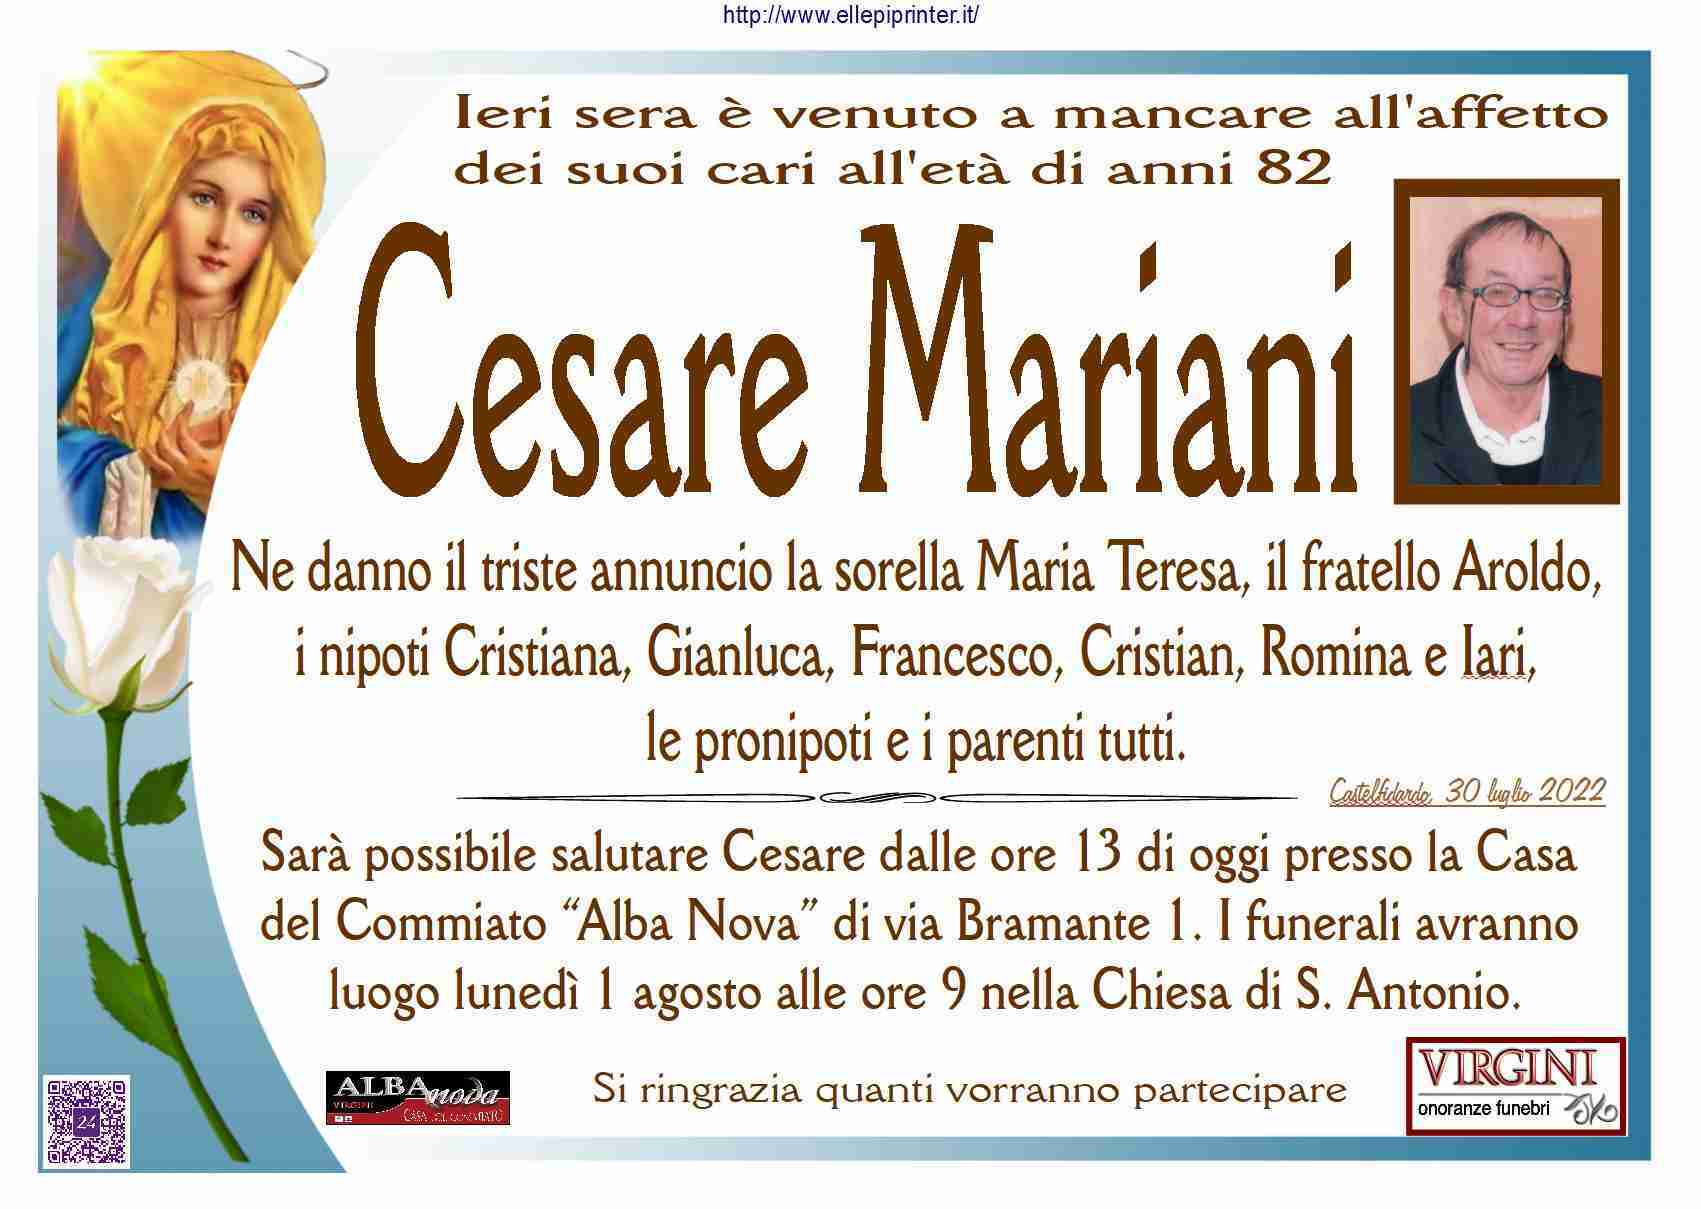 Cesare Mariani